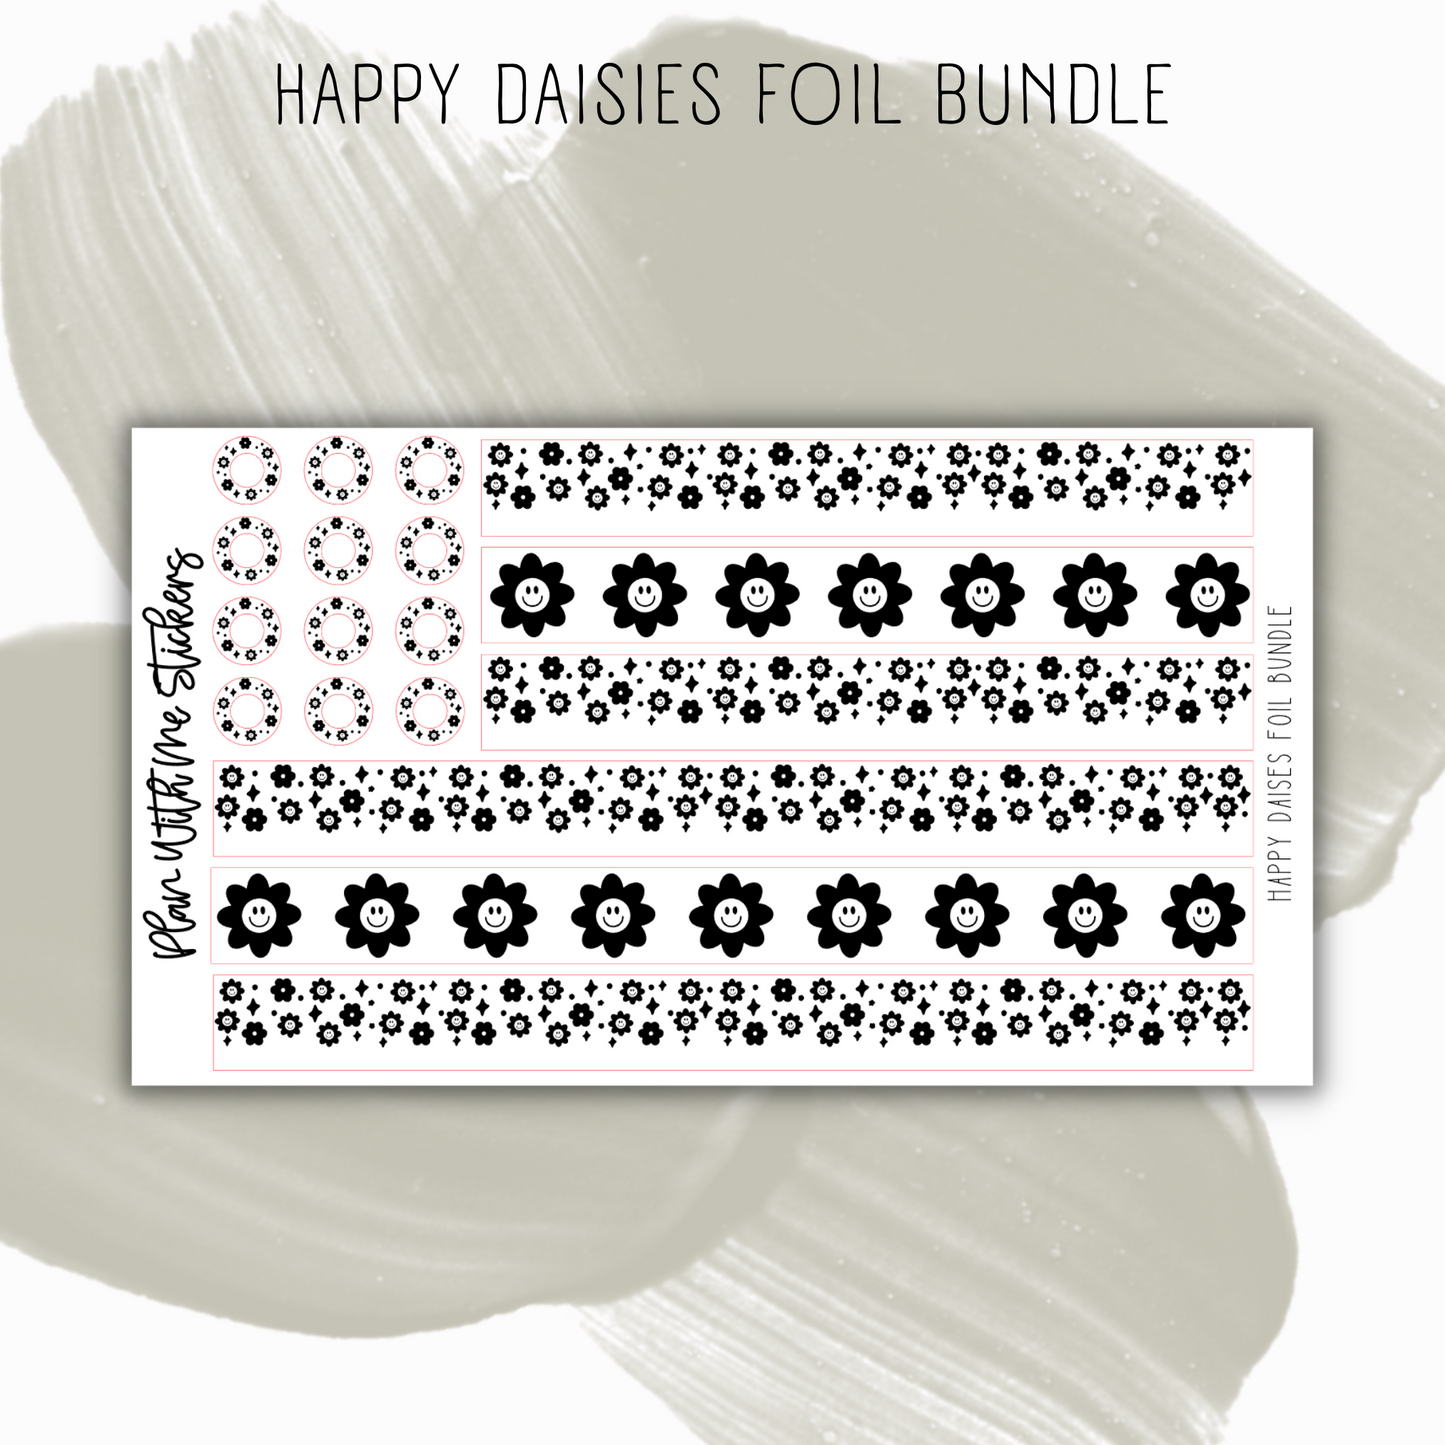 Happy Daisies Foil Bundle